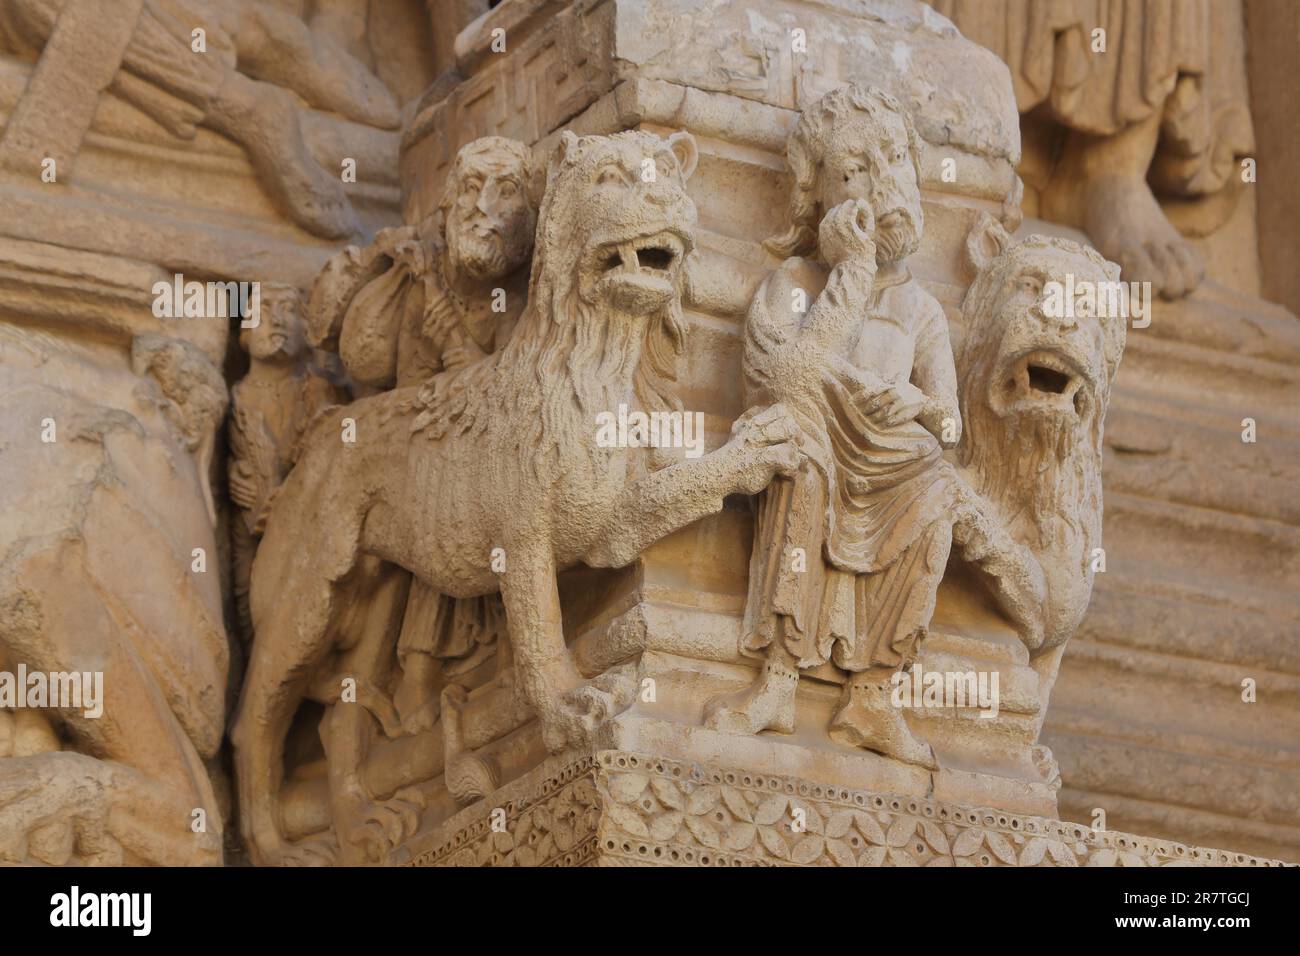 Sculptures Daniel in the Lion's Den, St-Trophime Cathedral, Place de la Republique, Imperial Square, Saint, stone, crafts, biblical, scene, figures Stock Photo